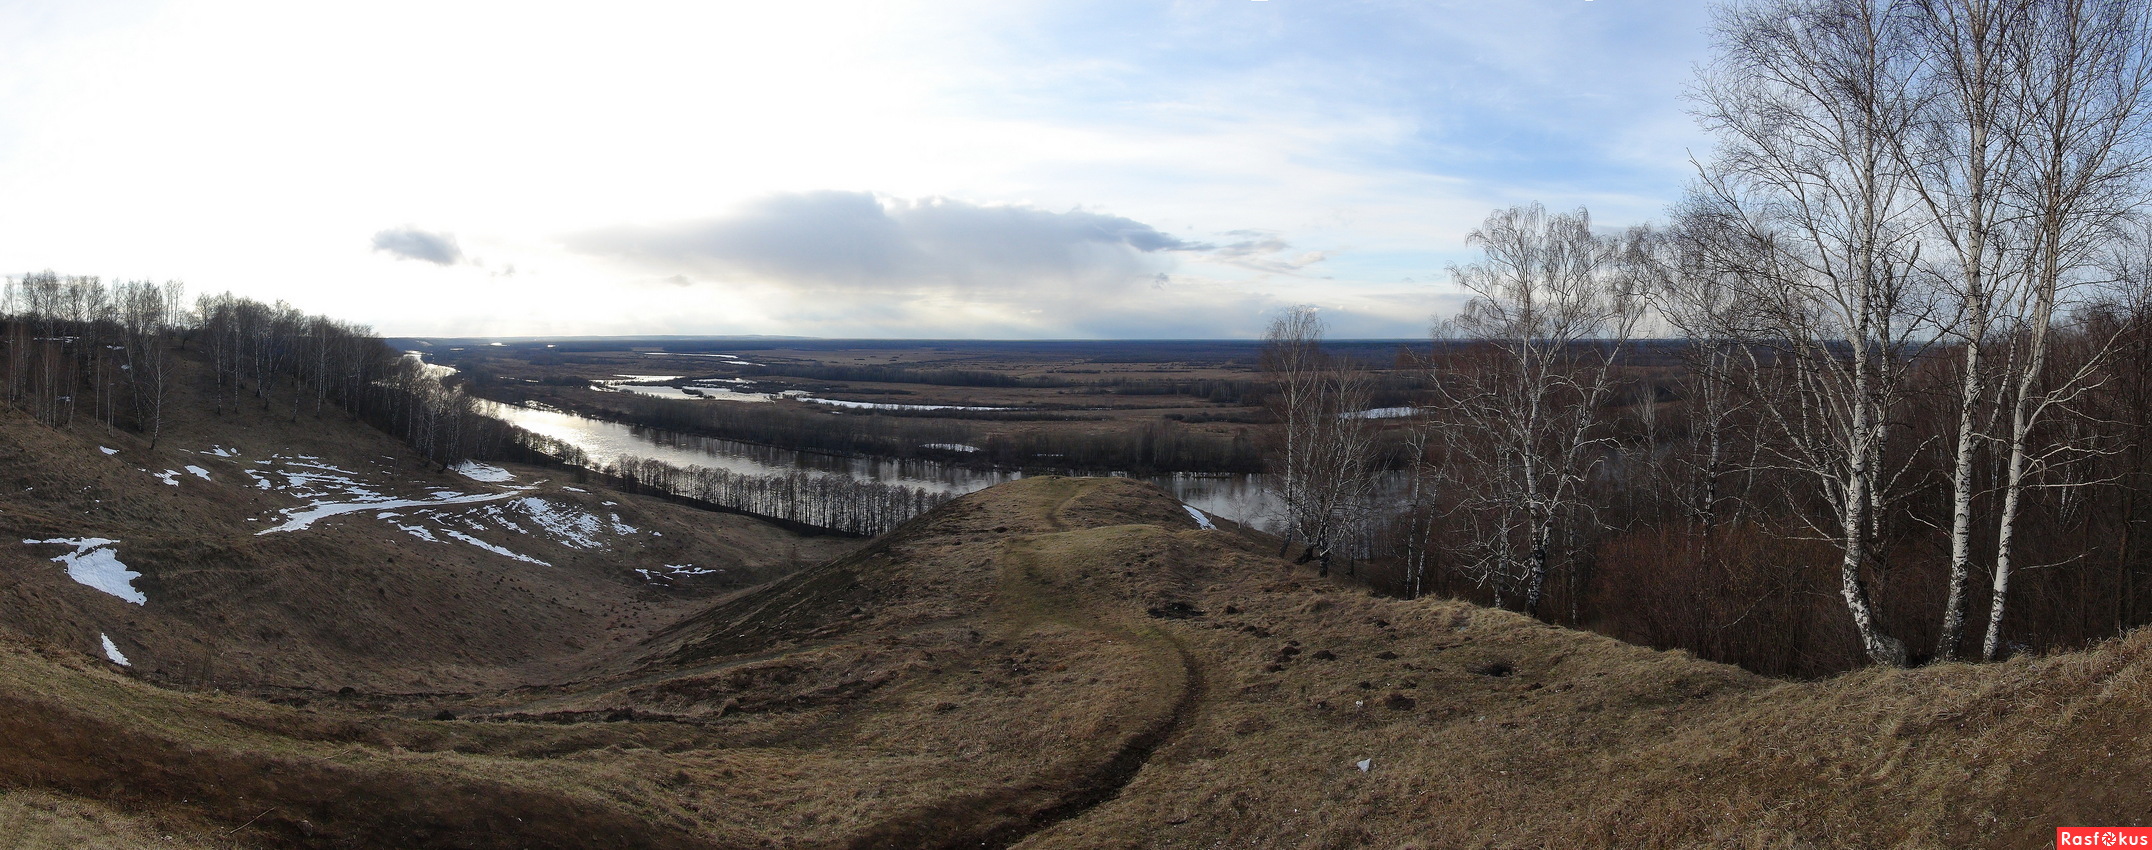 Лысая гора Владимирская область зимой